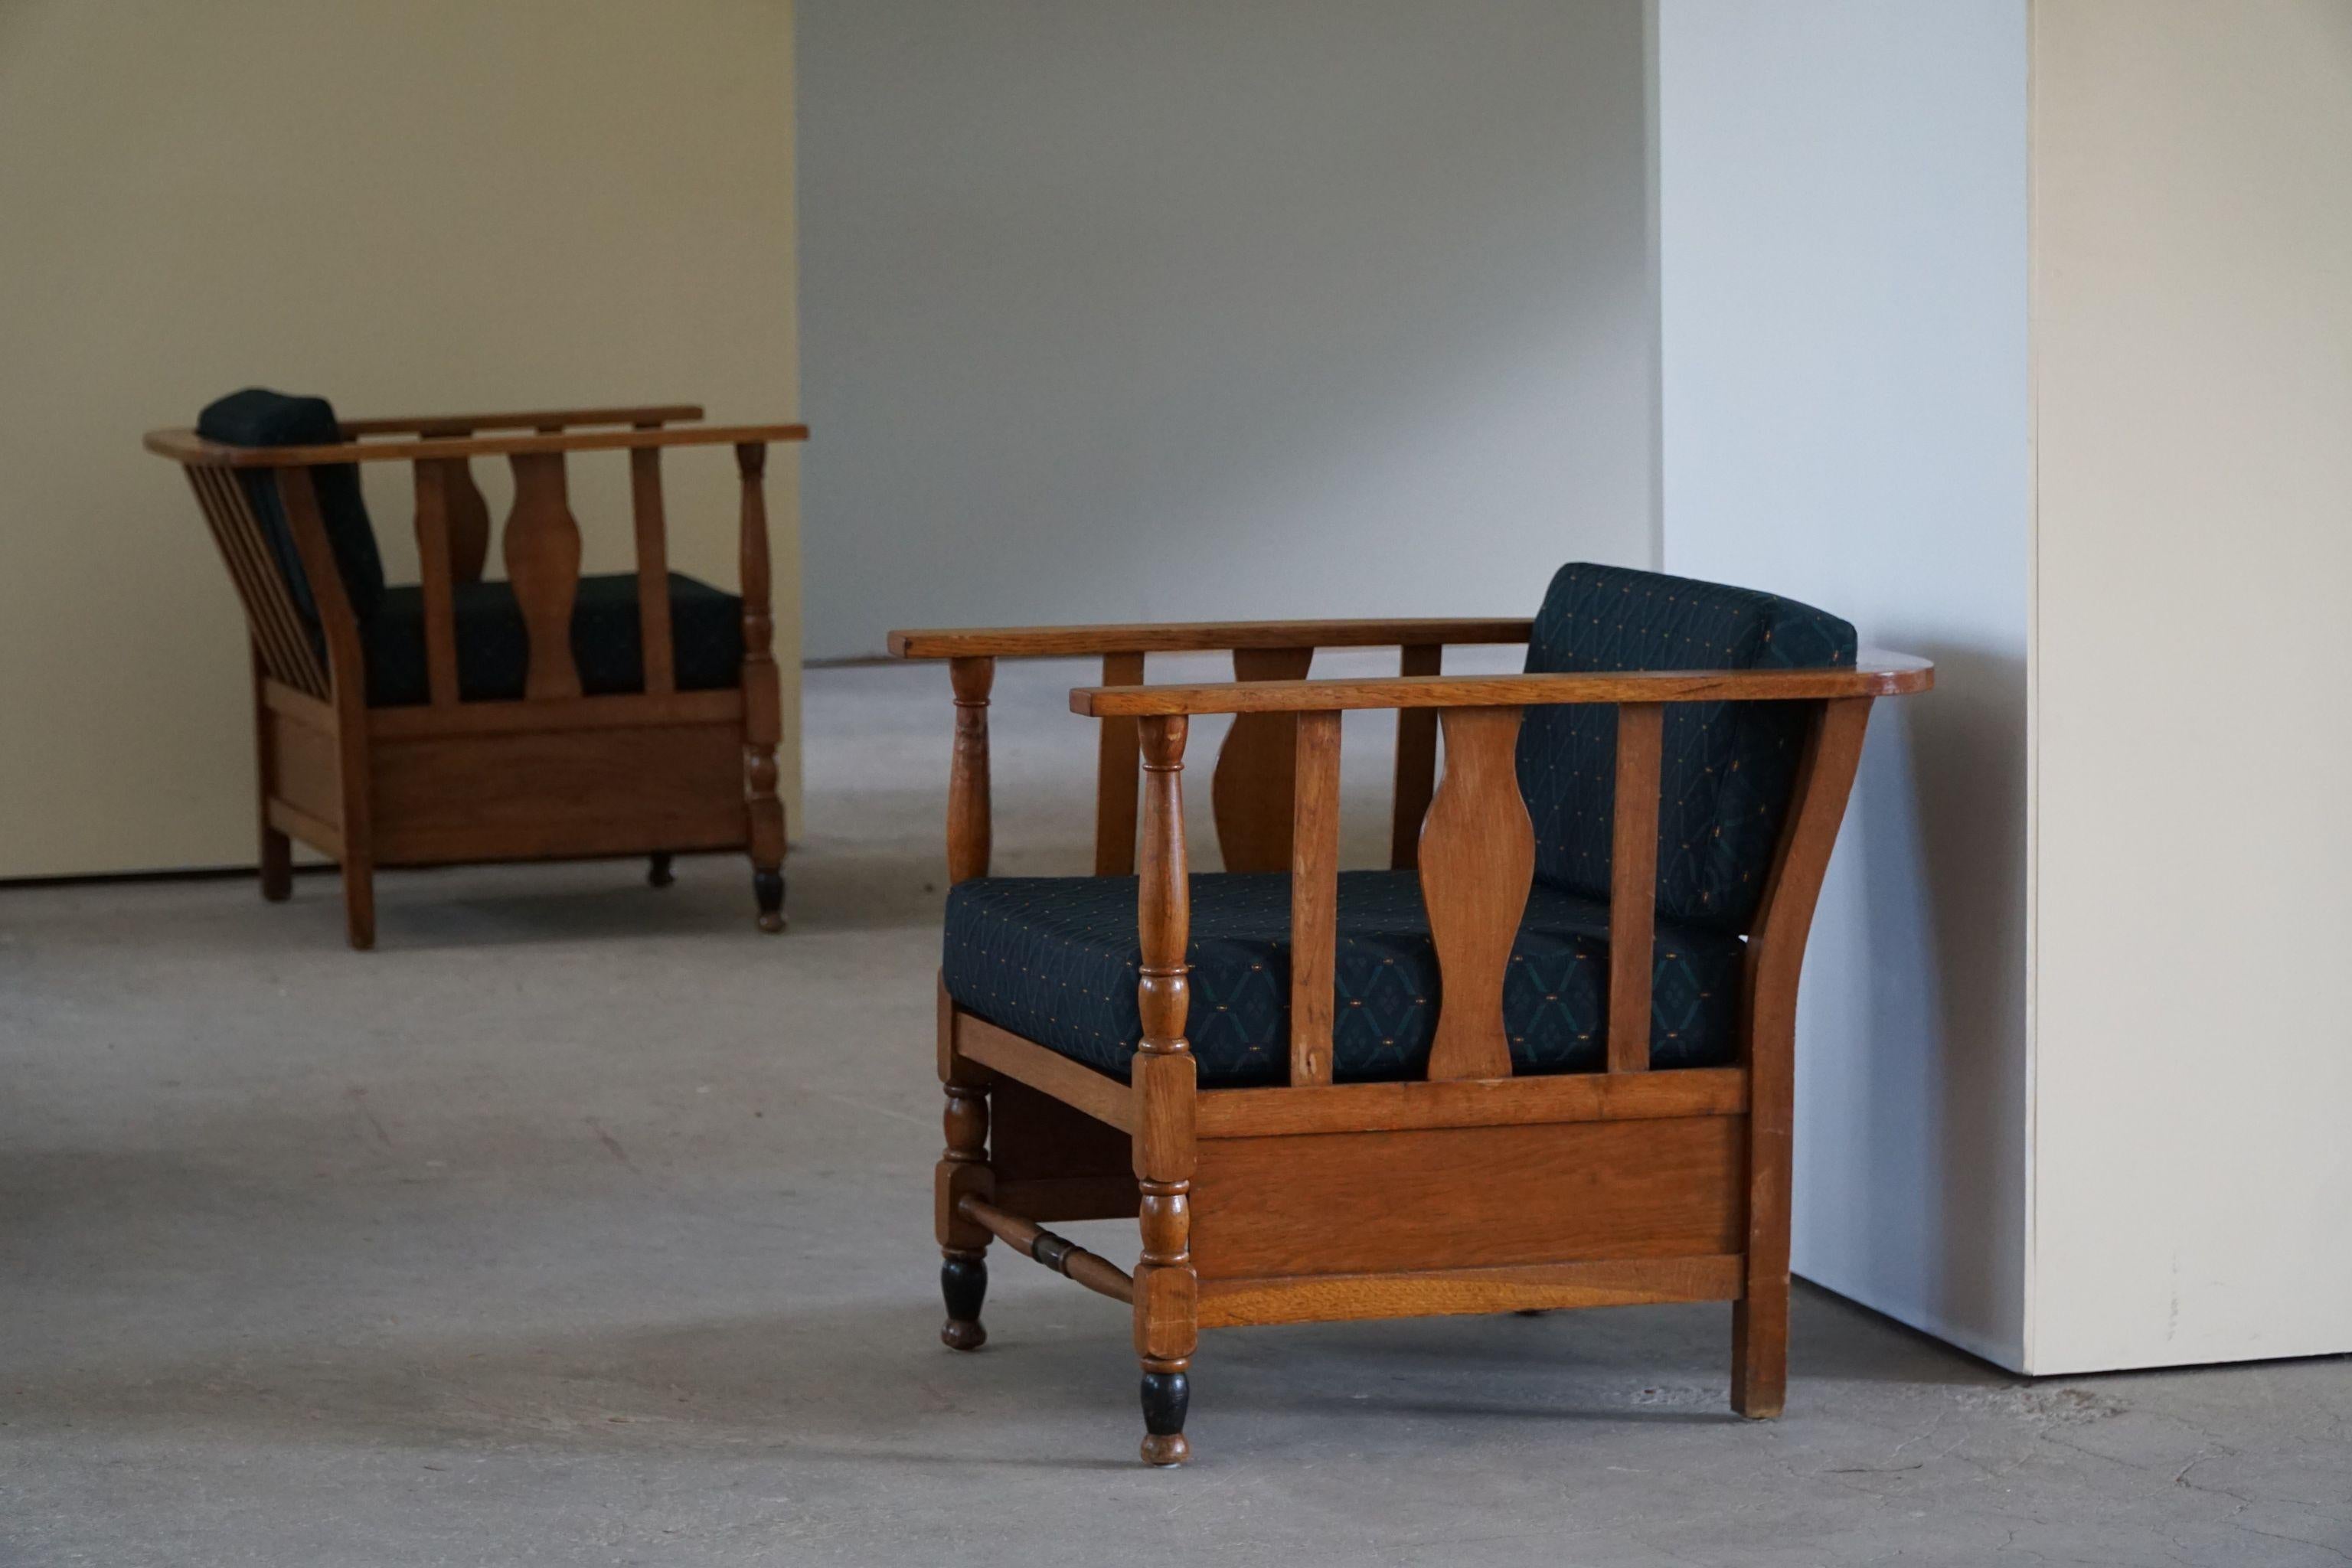 Raro par de sillones / butacas esculturales de roble macizo, retapizados con tela de estilo real. Fabricado por un ebanista danés a principios del siglo XX.
Estas preciosas sillas vintage complementarán muchos estilos de interior modernos.

